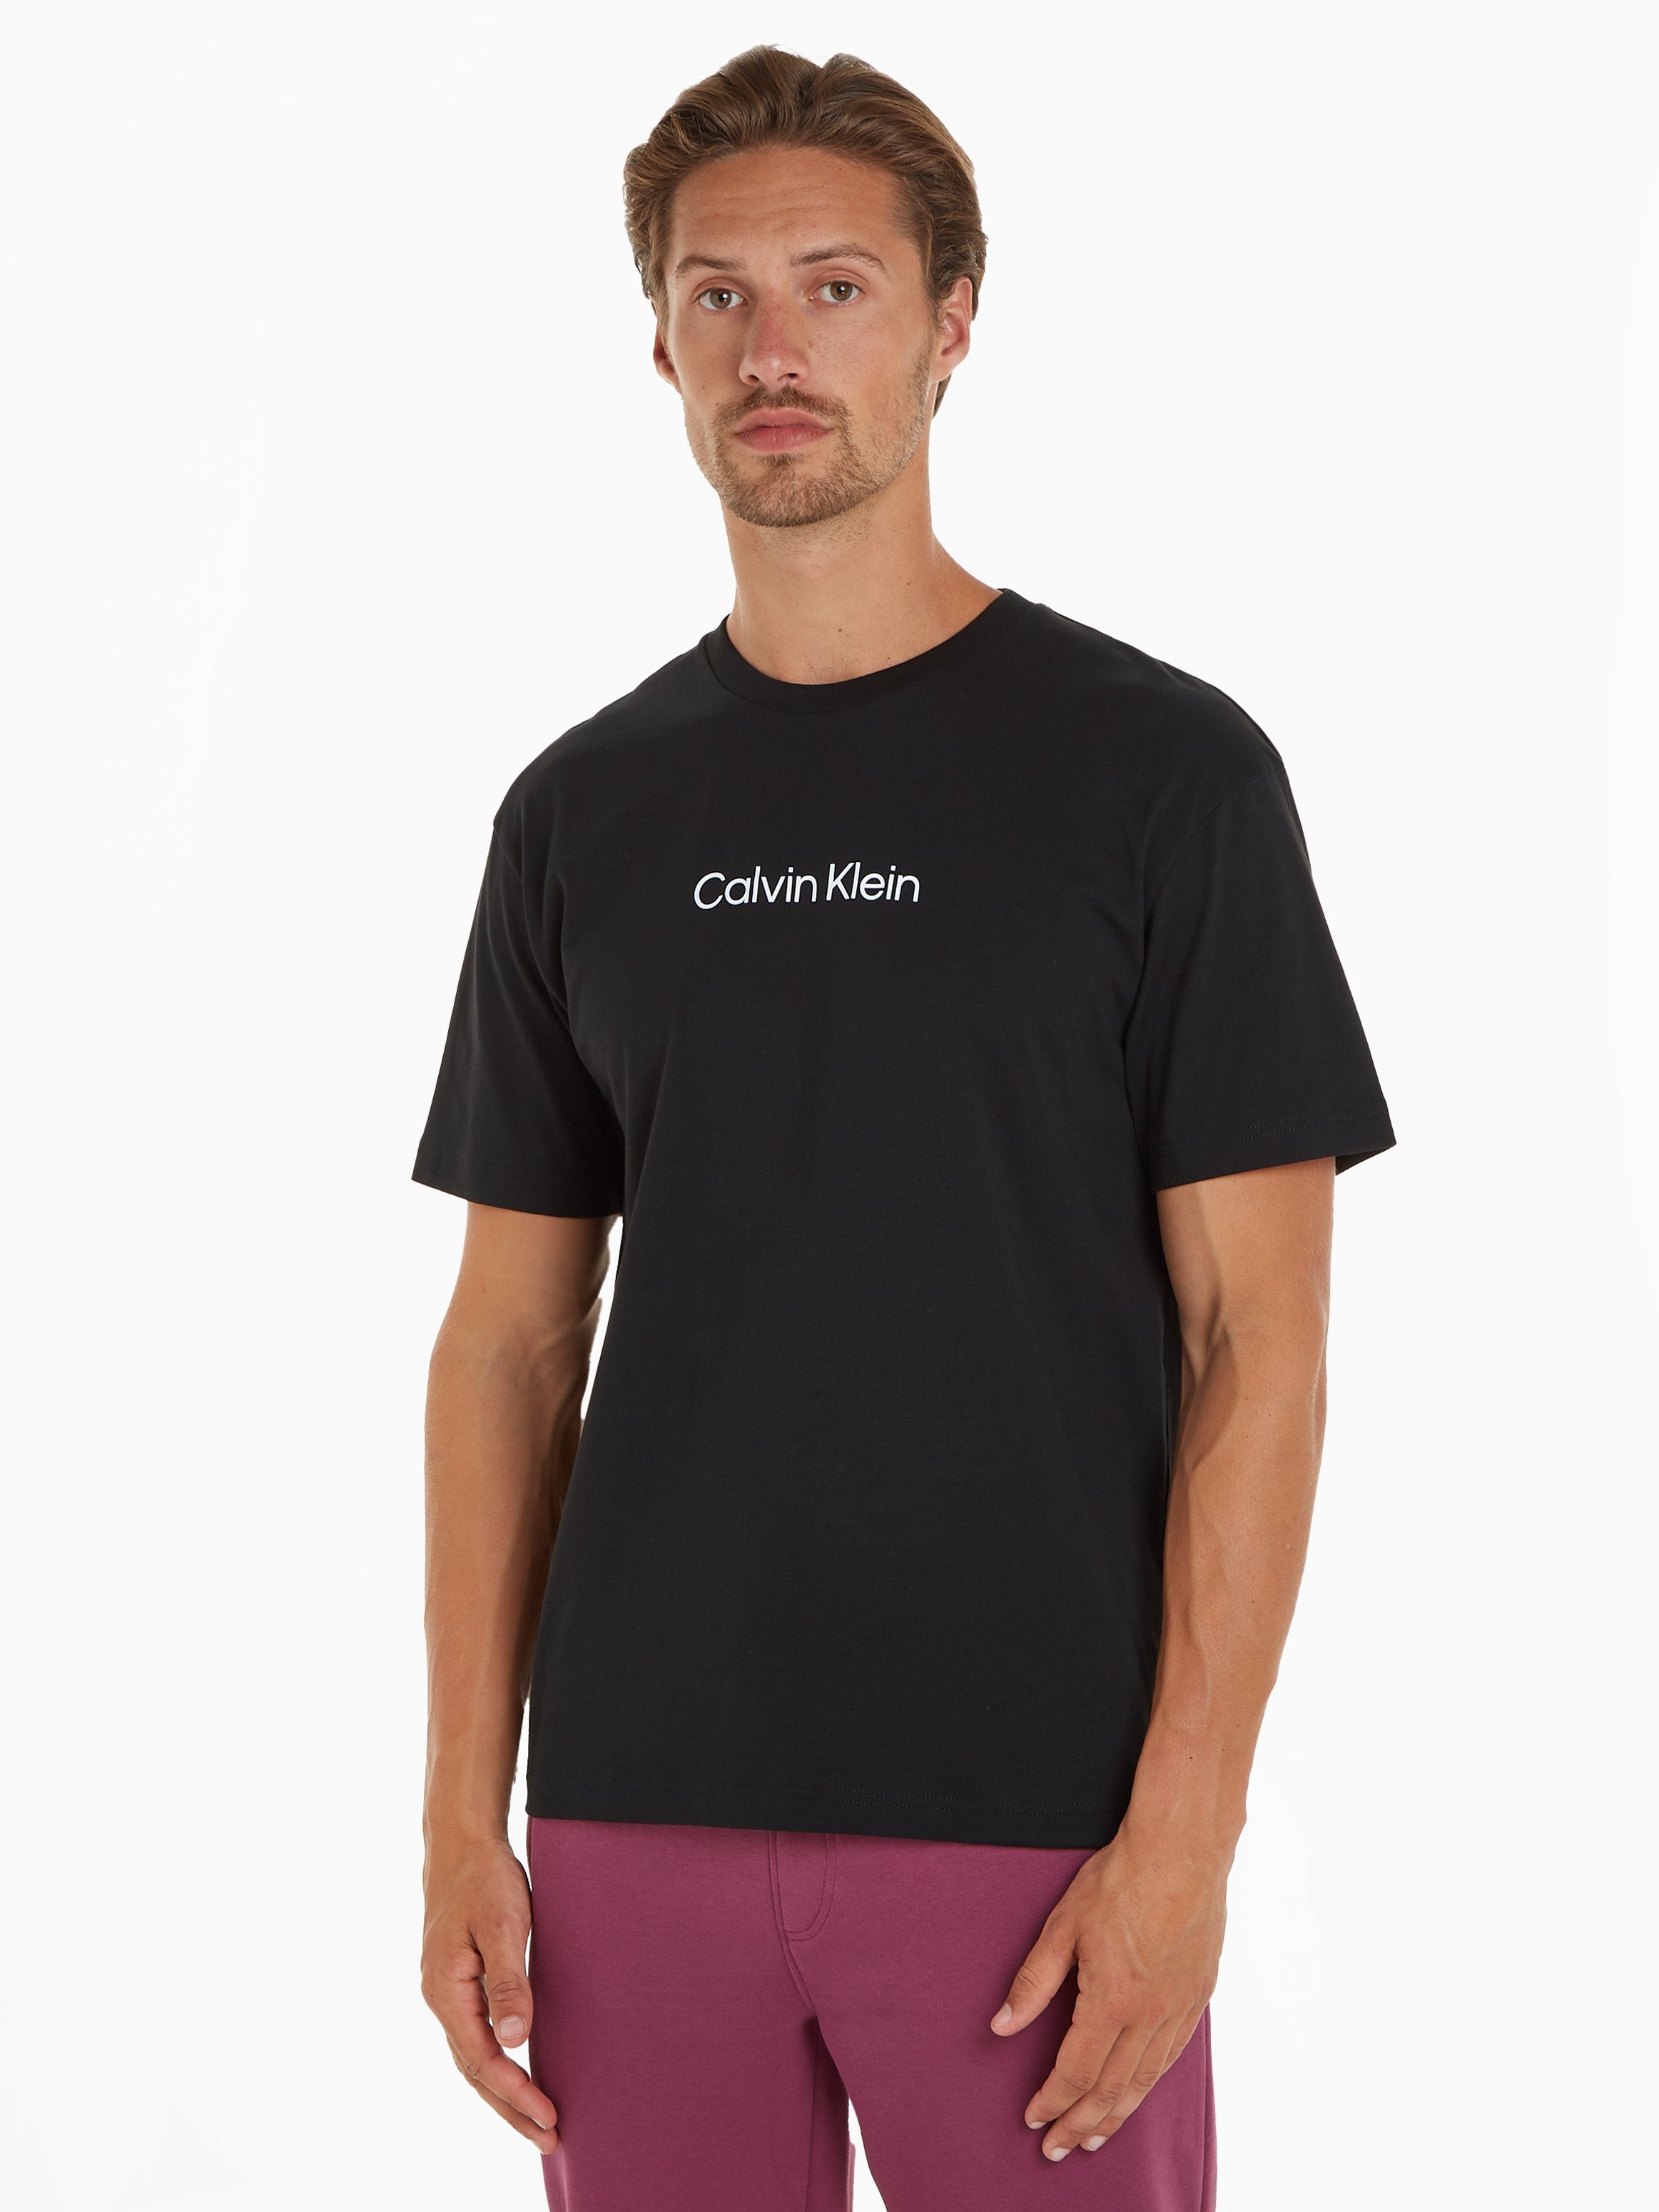 Günstiger Fachmarkt Calvin Klein T-Shirt HERO schwarz mit COMFORT aufgedrucktem T-SHIRT LOGO Markenlabel